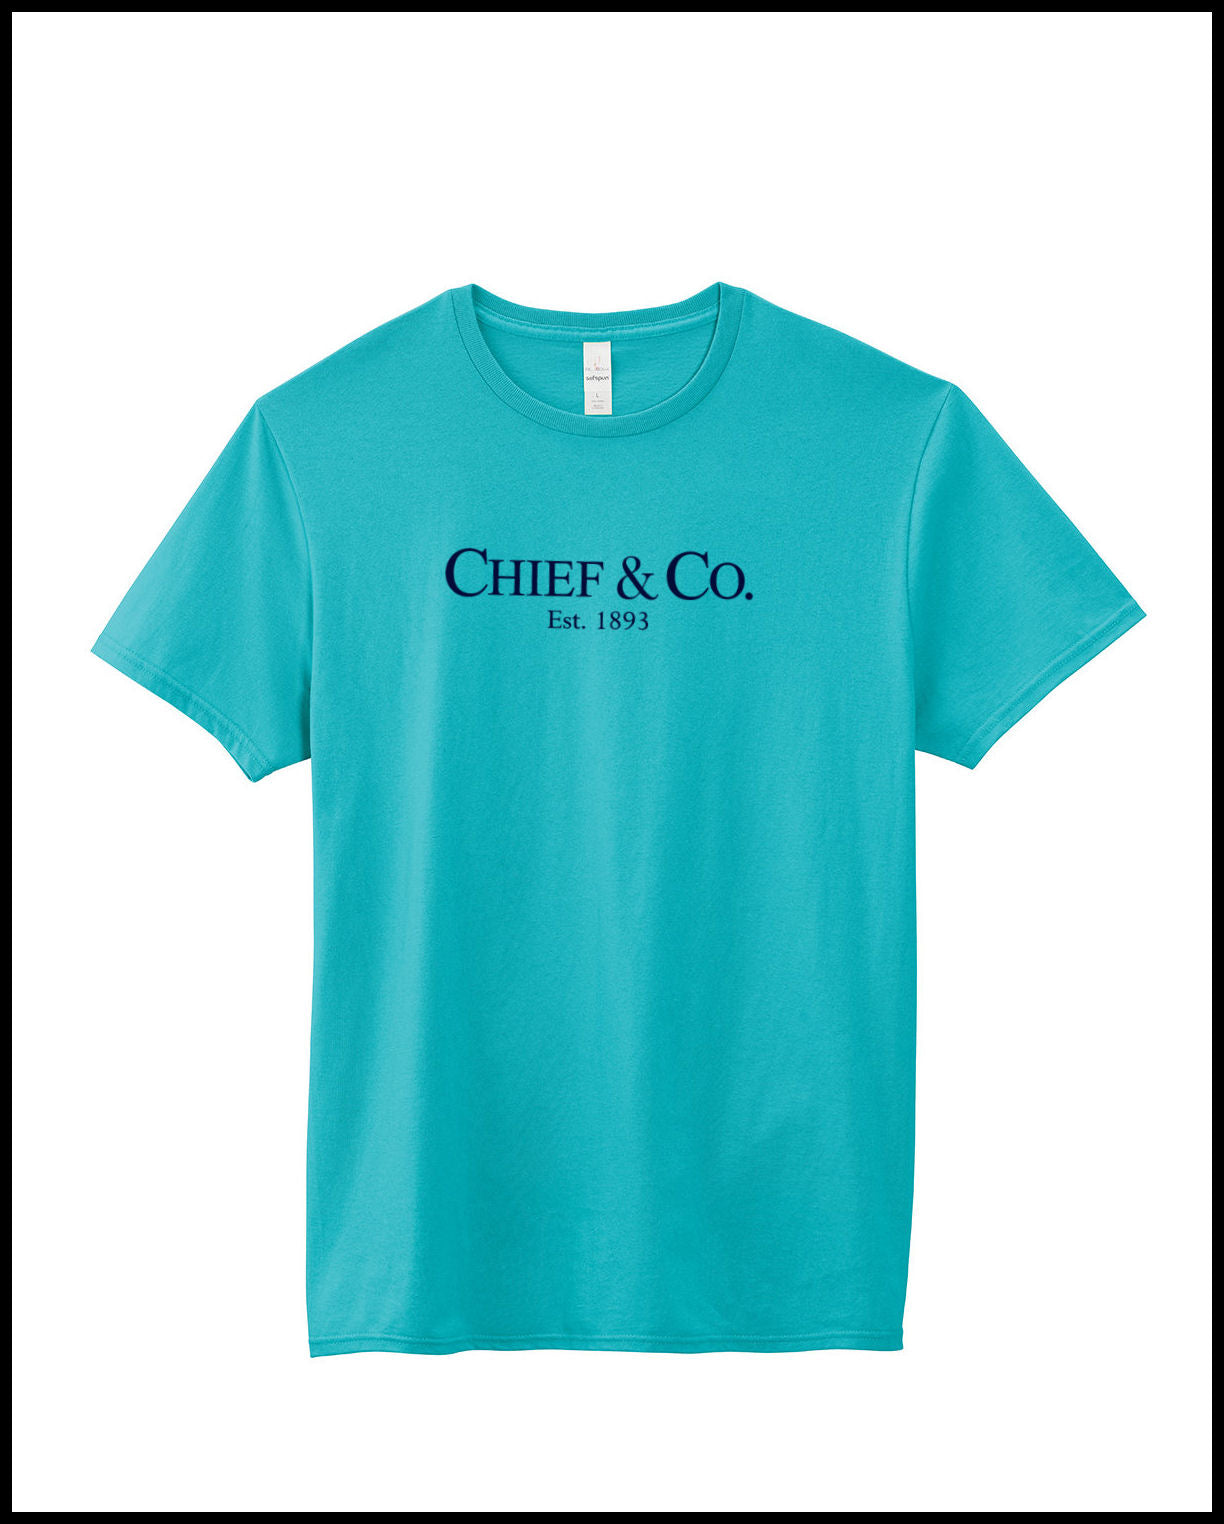 Chief & Company Tahiti Blue & Navy T-Shirt